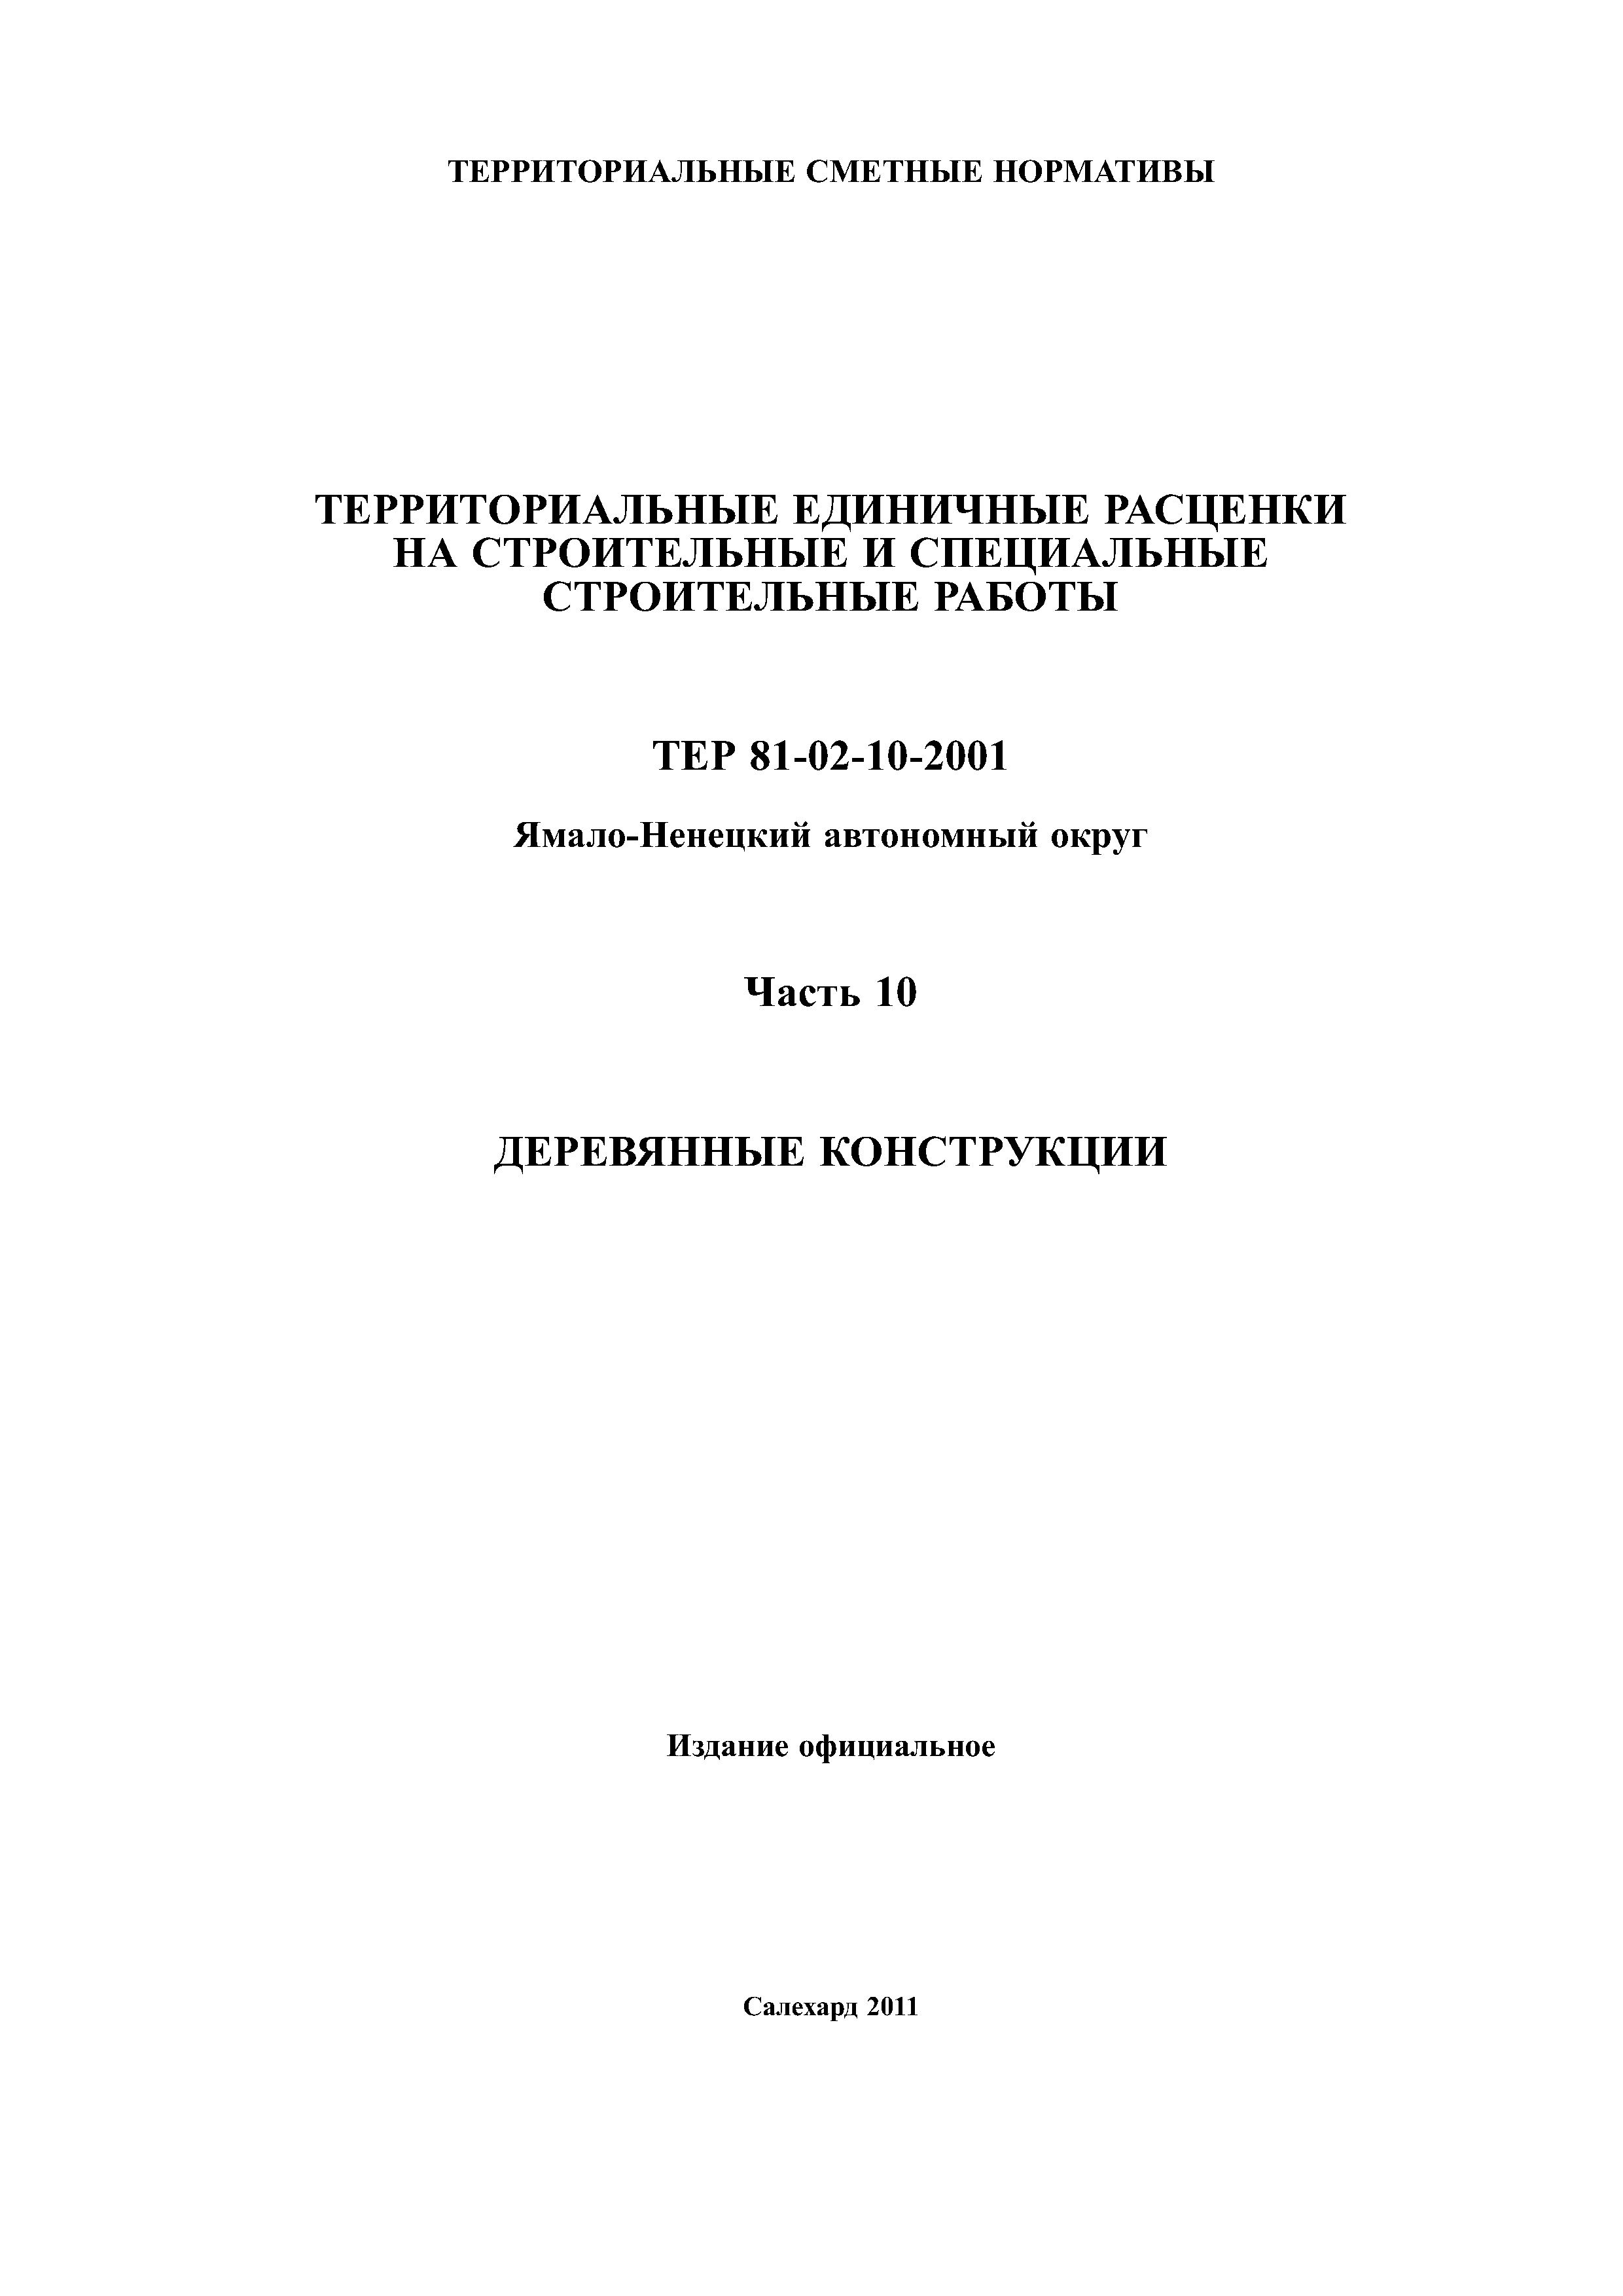 ТЕР Ямало-Ненецкий автономный округ 10-2001